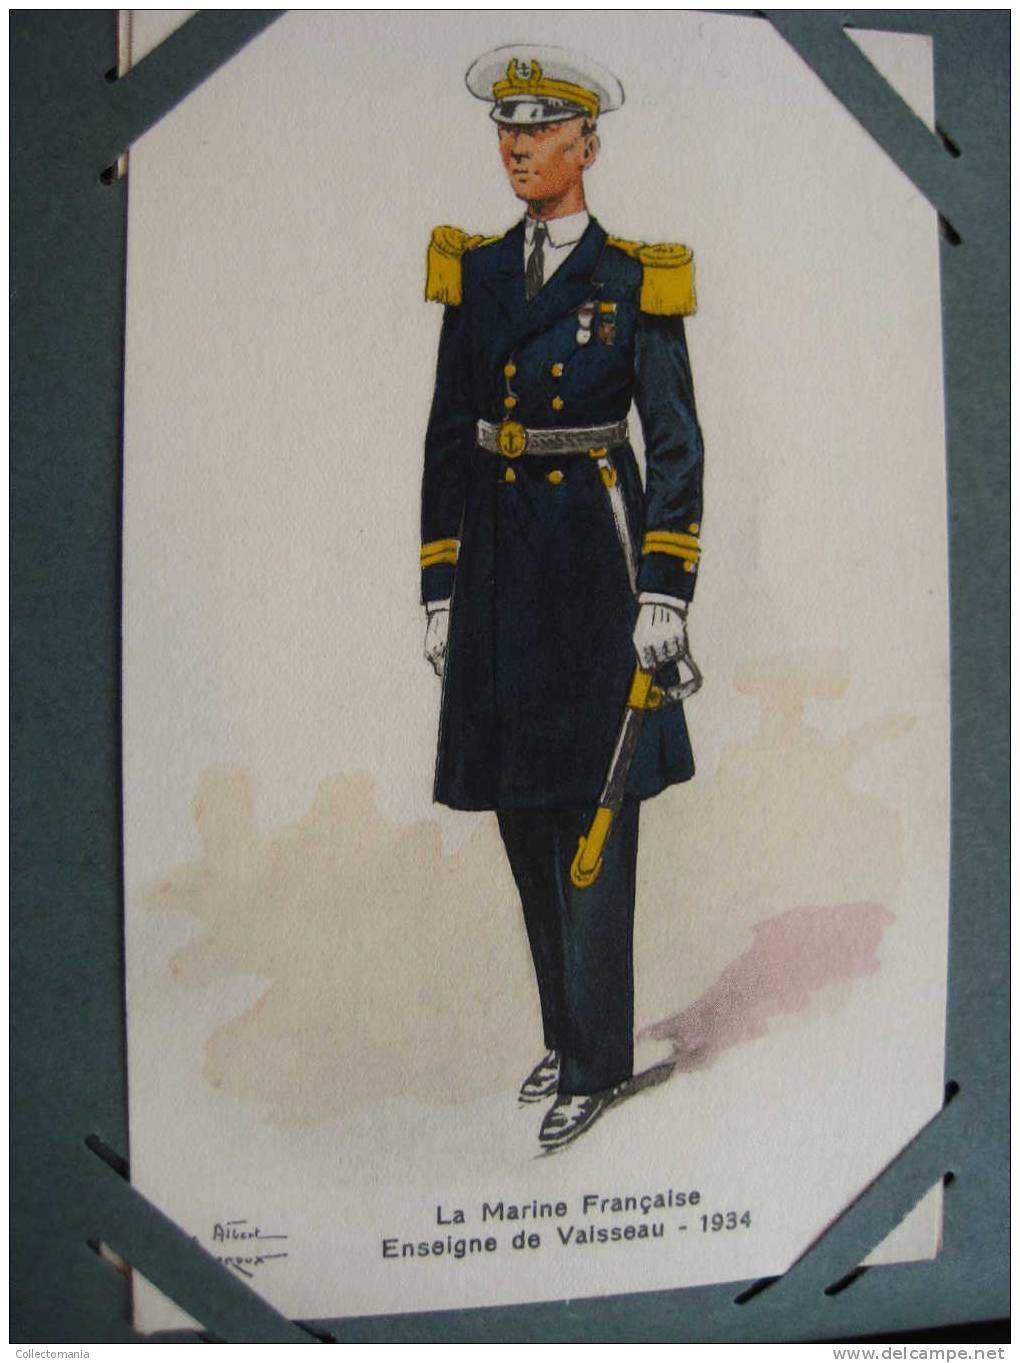 circa 1900 à 1915 comme coloré à la main - LUXE Military uniforms - 499 postcards - Album complet -  lithography superbe